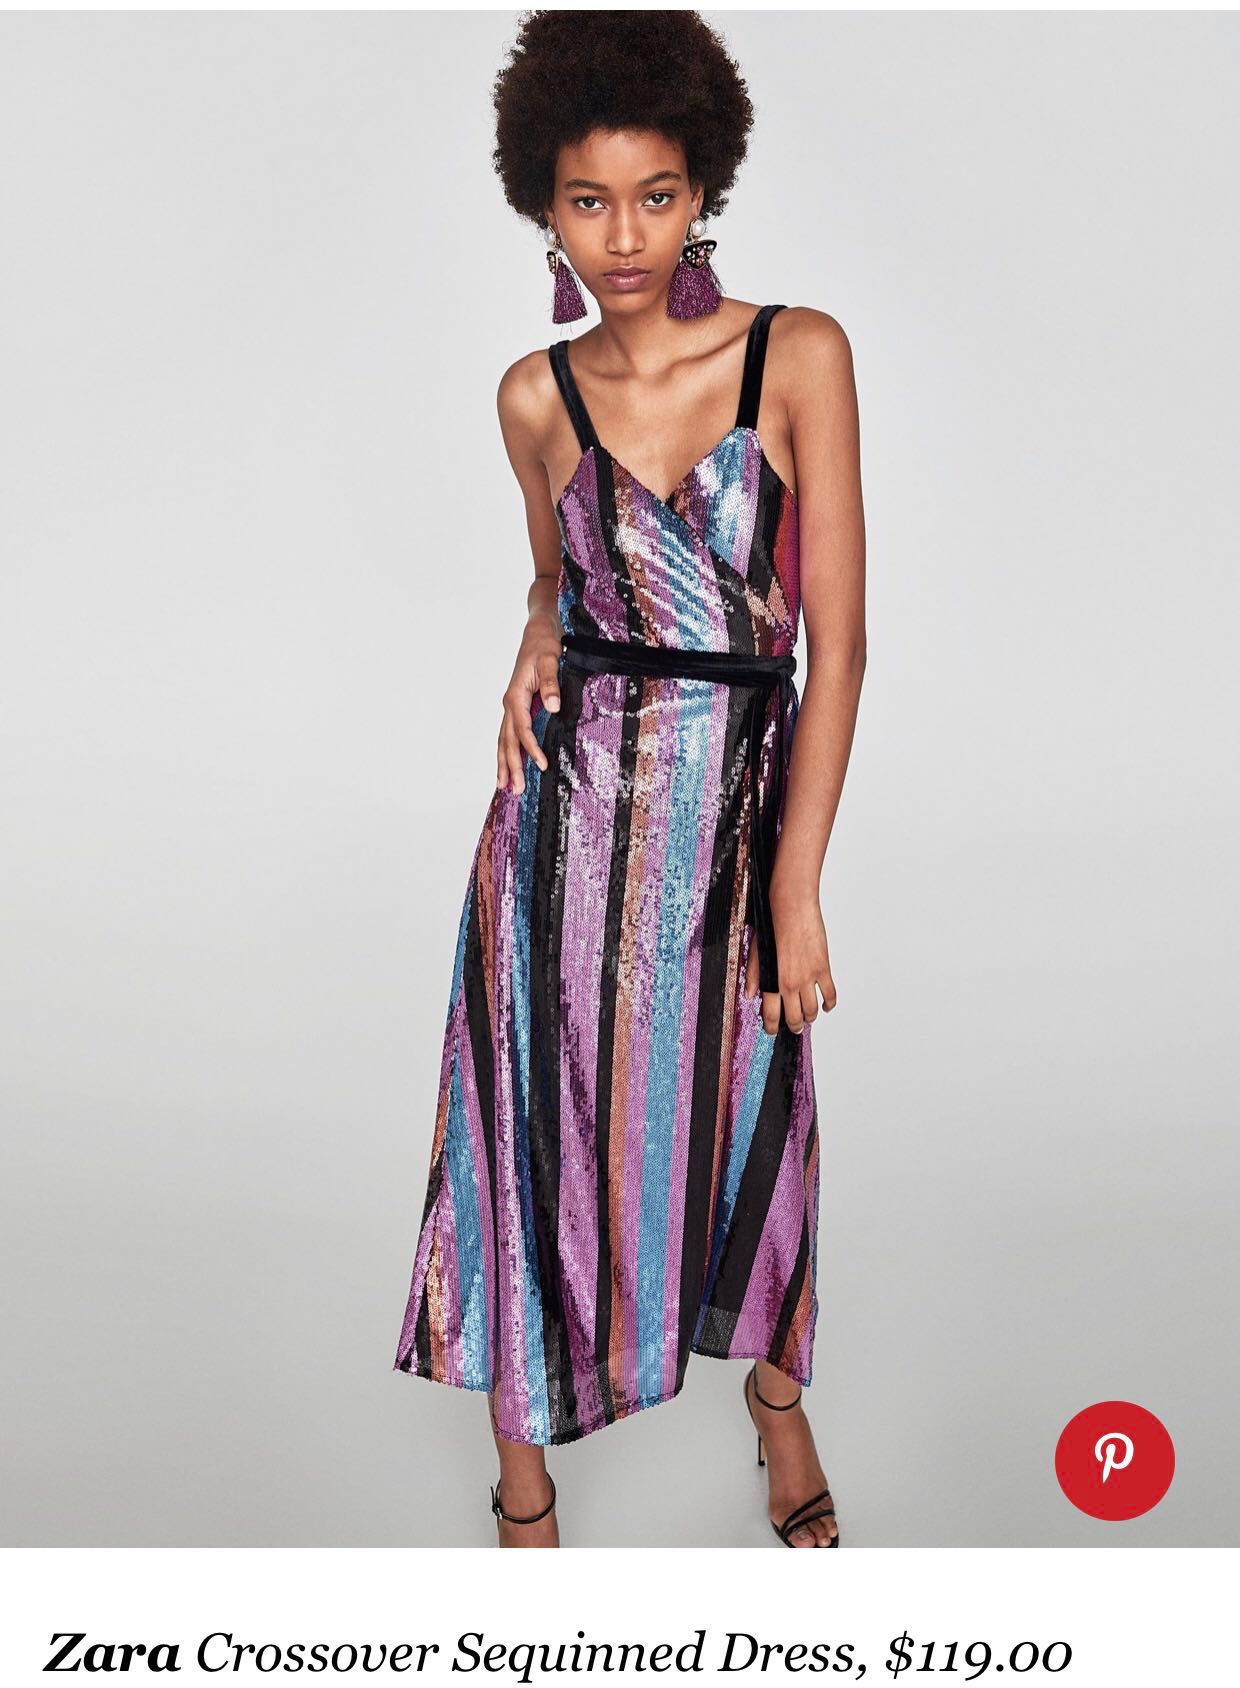 70's Sequin Dress Online Sales, UP TO ...